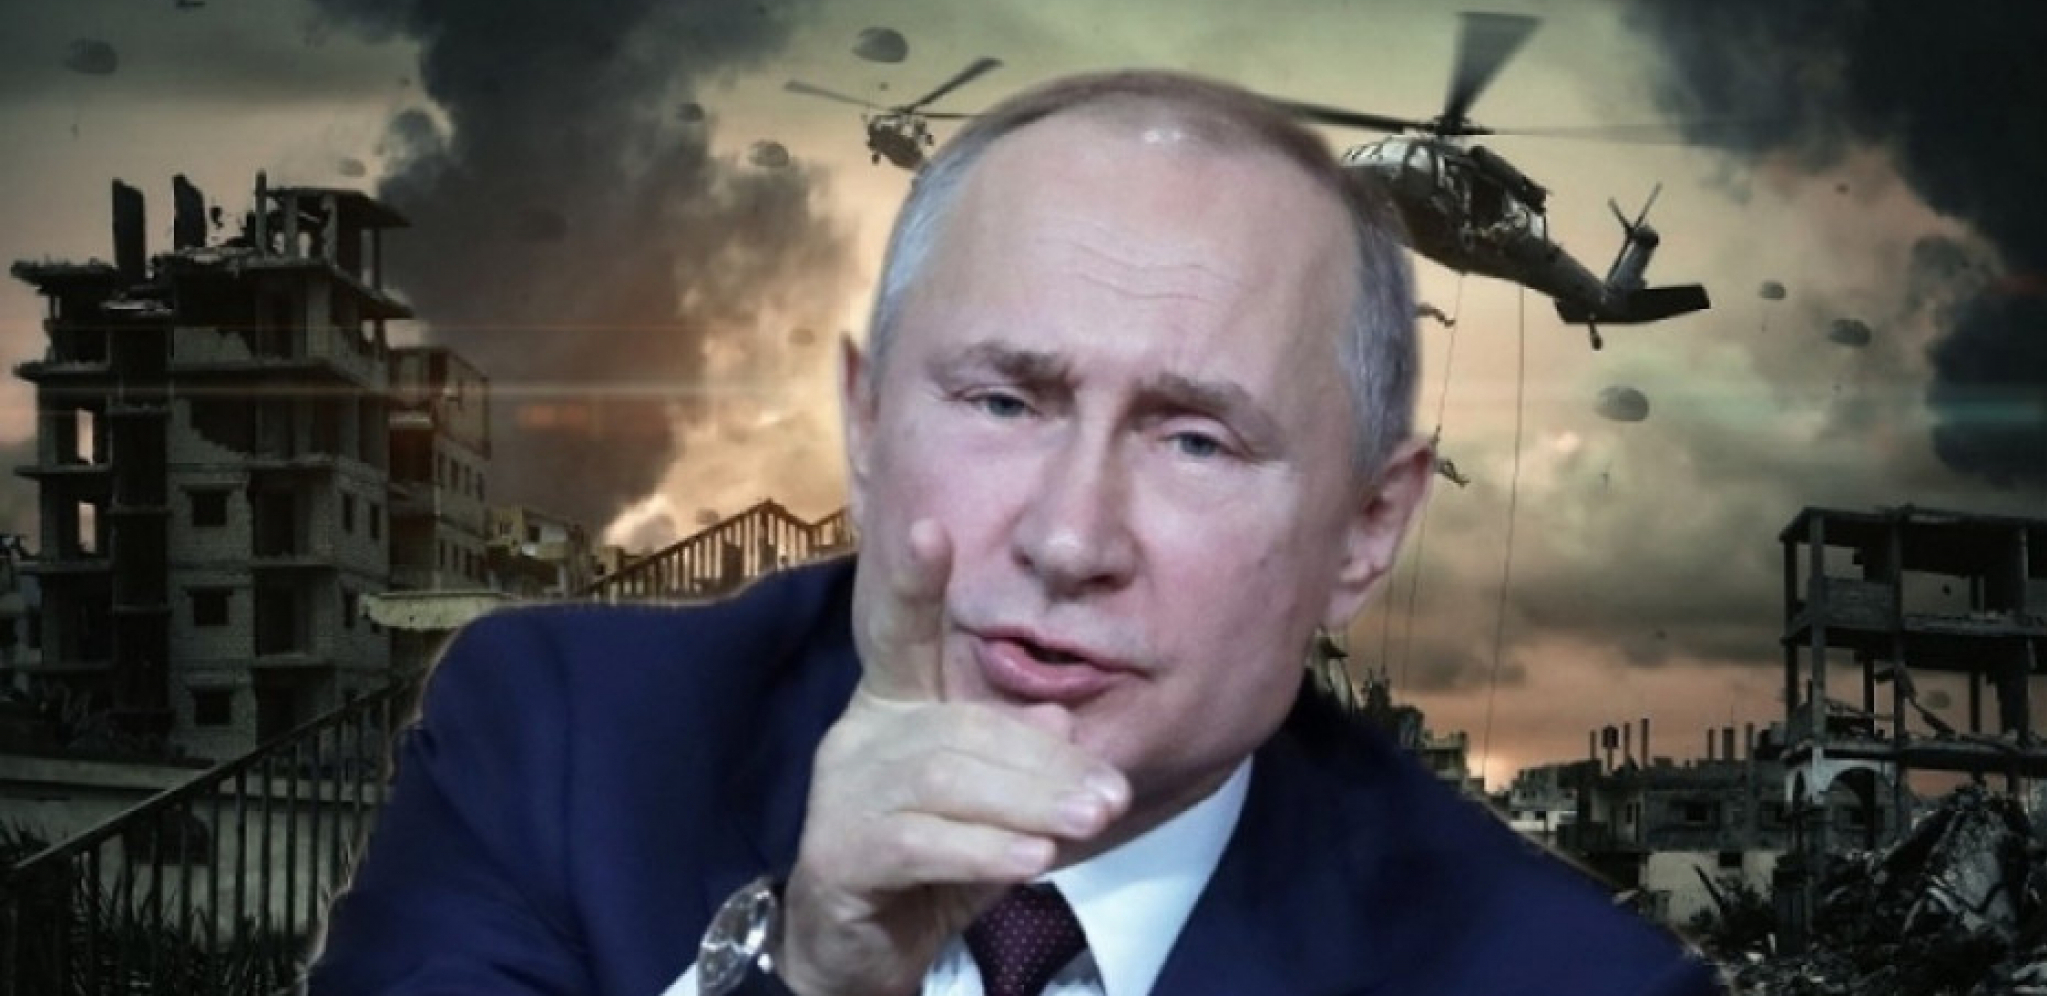 DA NIJE BILO DRŽAVNOG UDARA, NE BI BILO NI VOJNE OPERACIJE Putin otkrio pravi razlog ukrajinskog konflikta